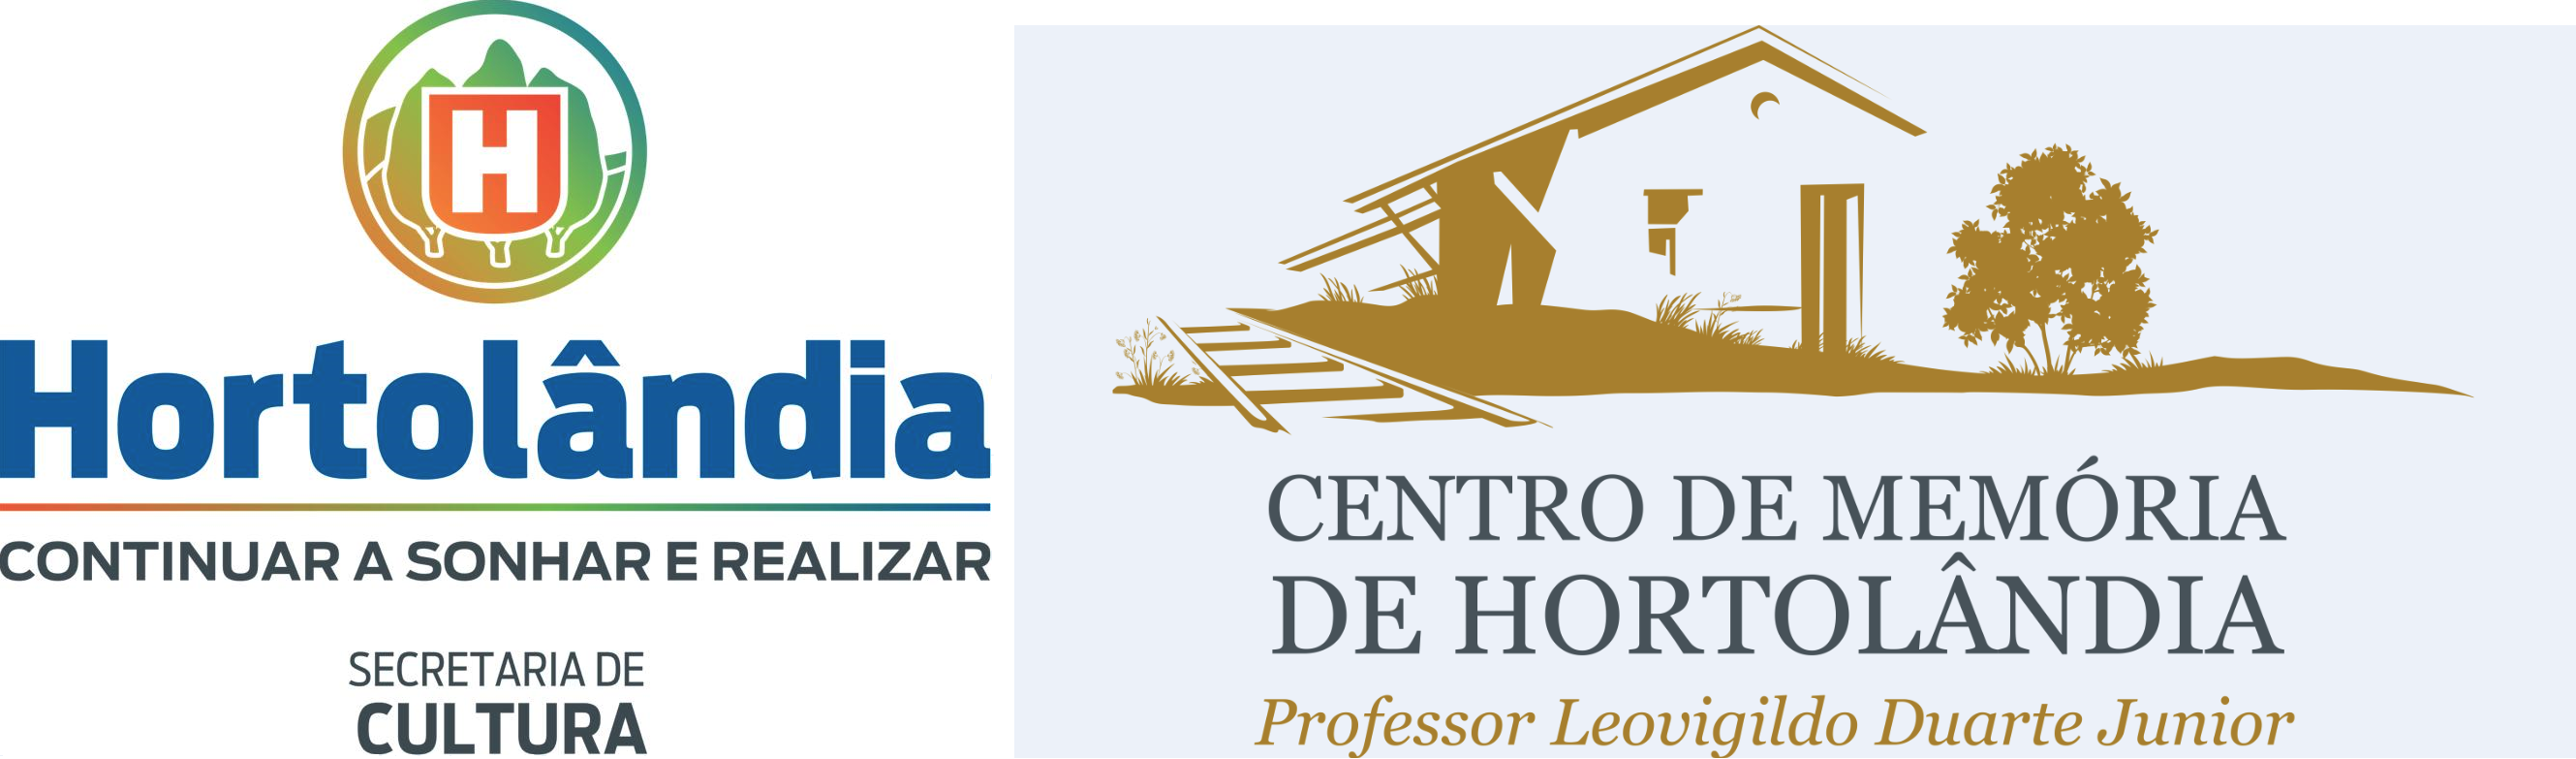 Acervo Digital do Centro de Memória de Hortolândia Professor Leovigildo Duarte Junior